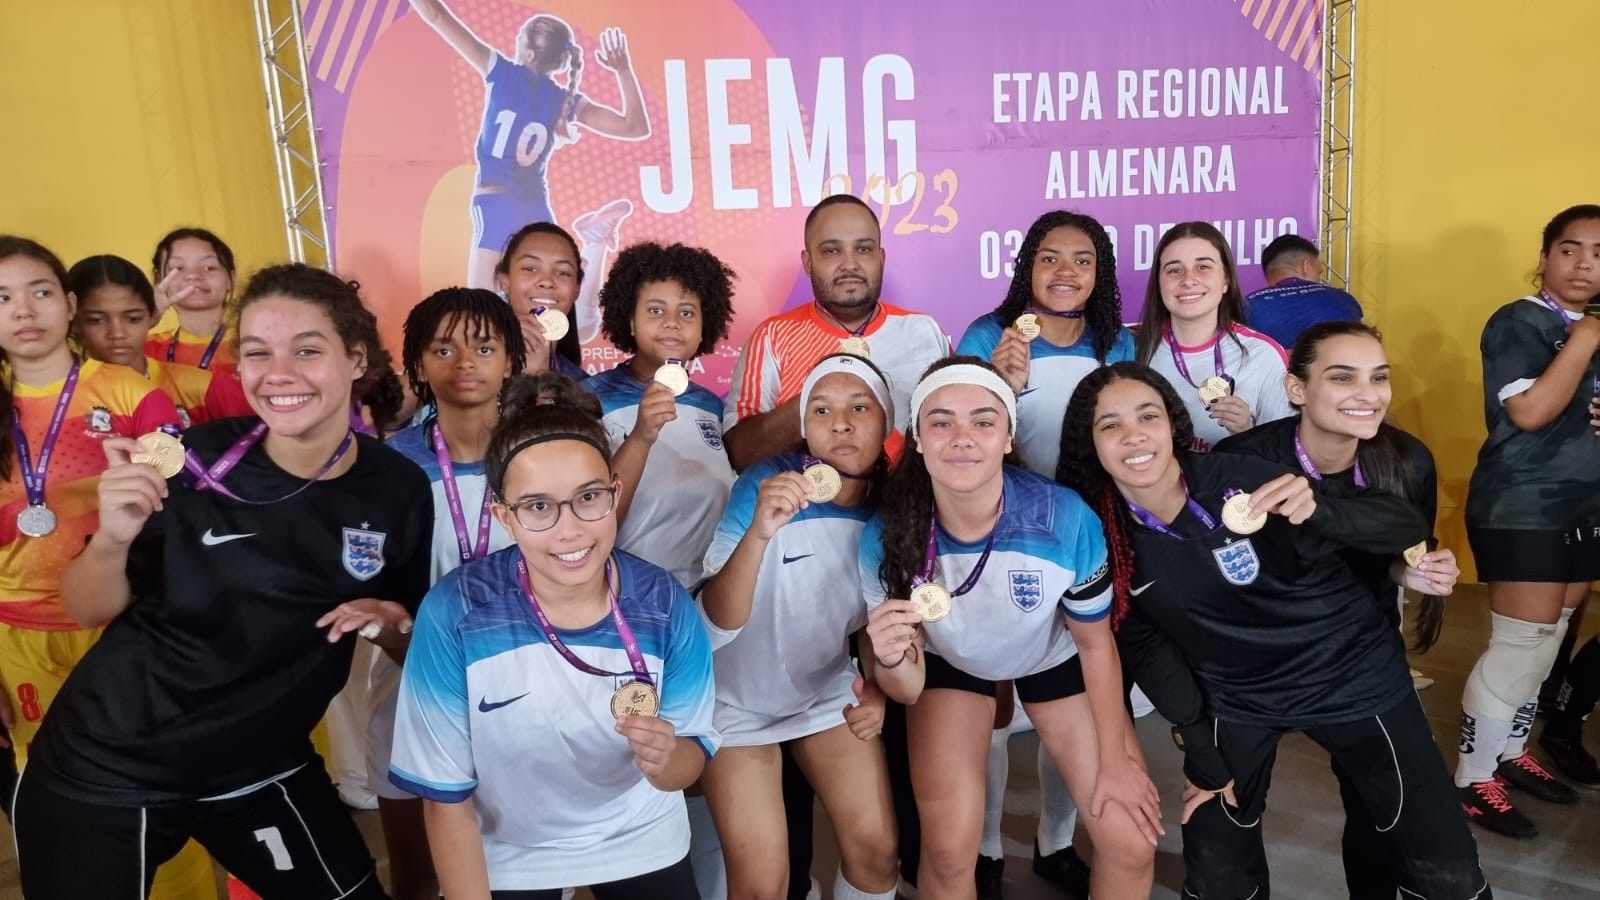 e-JEMG/ Etapa On-line dos Jogos Escolares de Minas Gerais